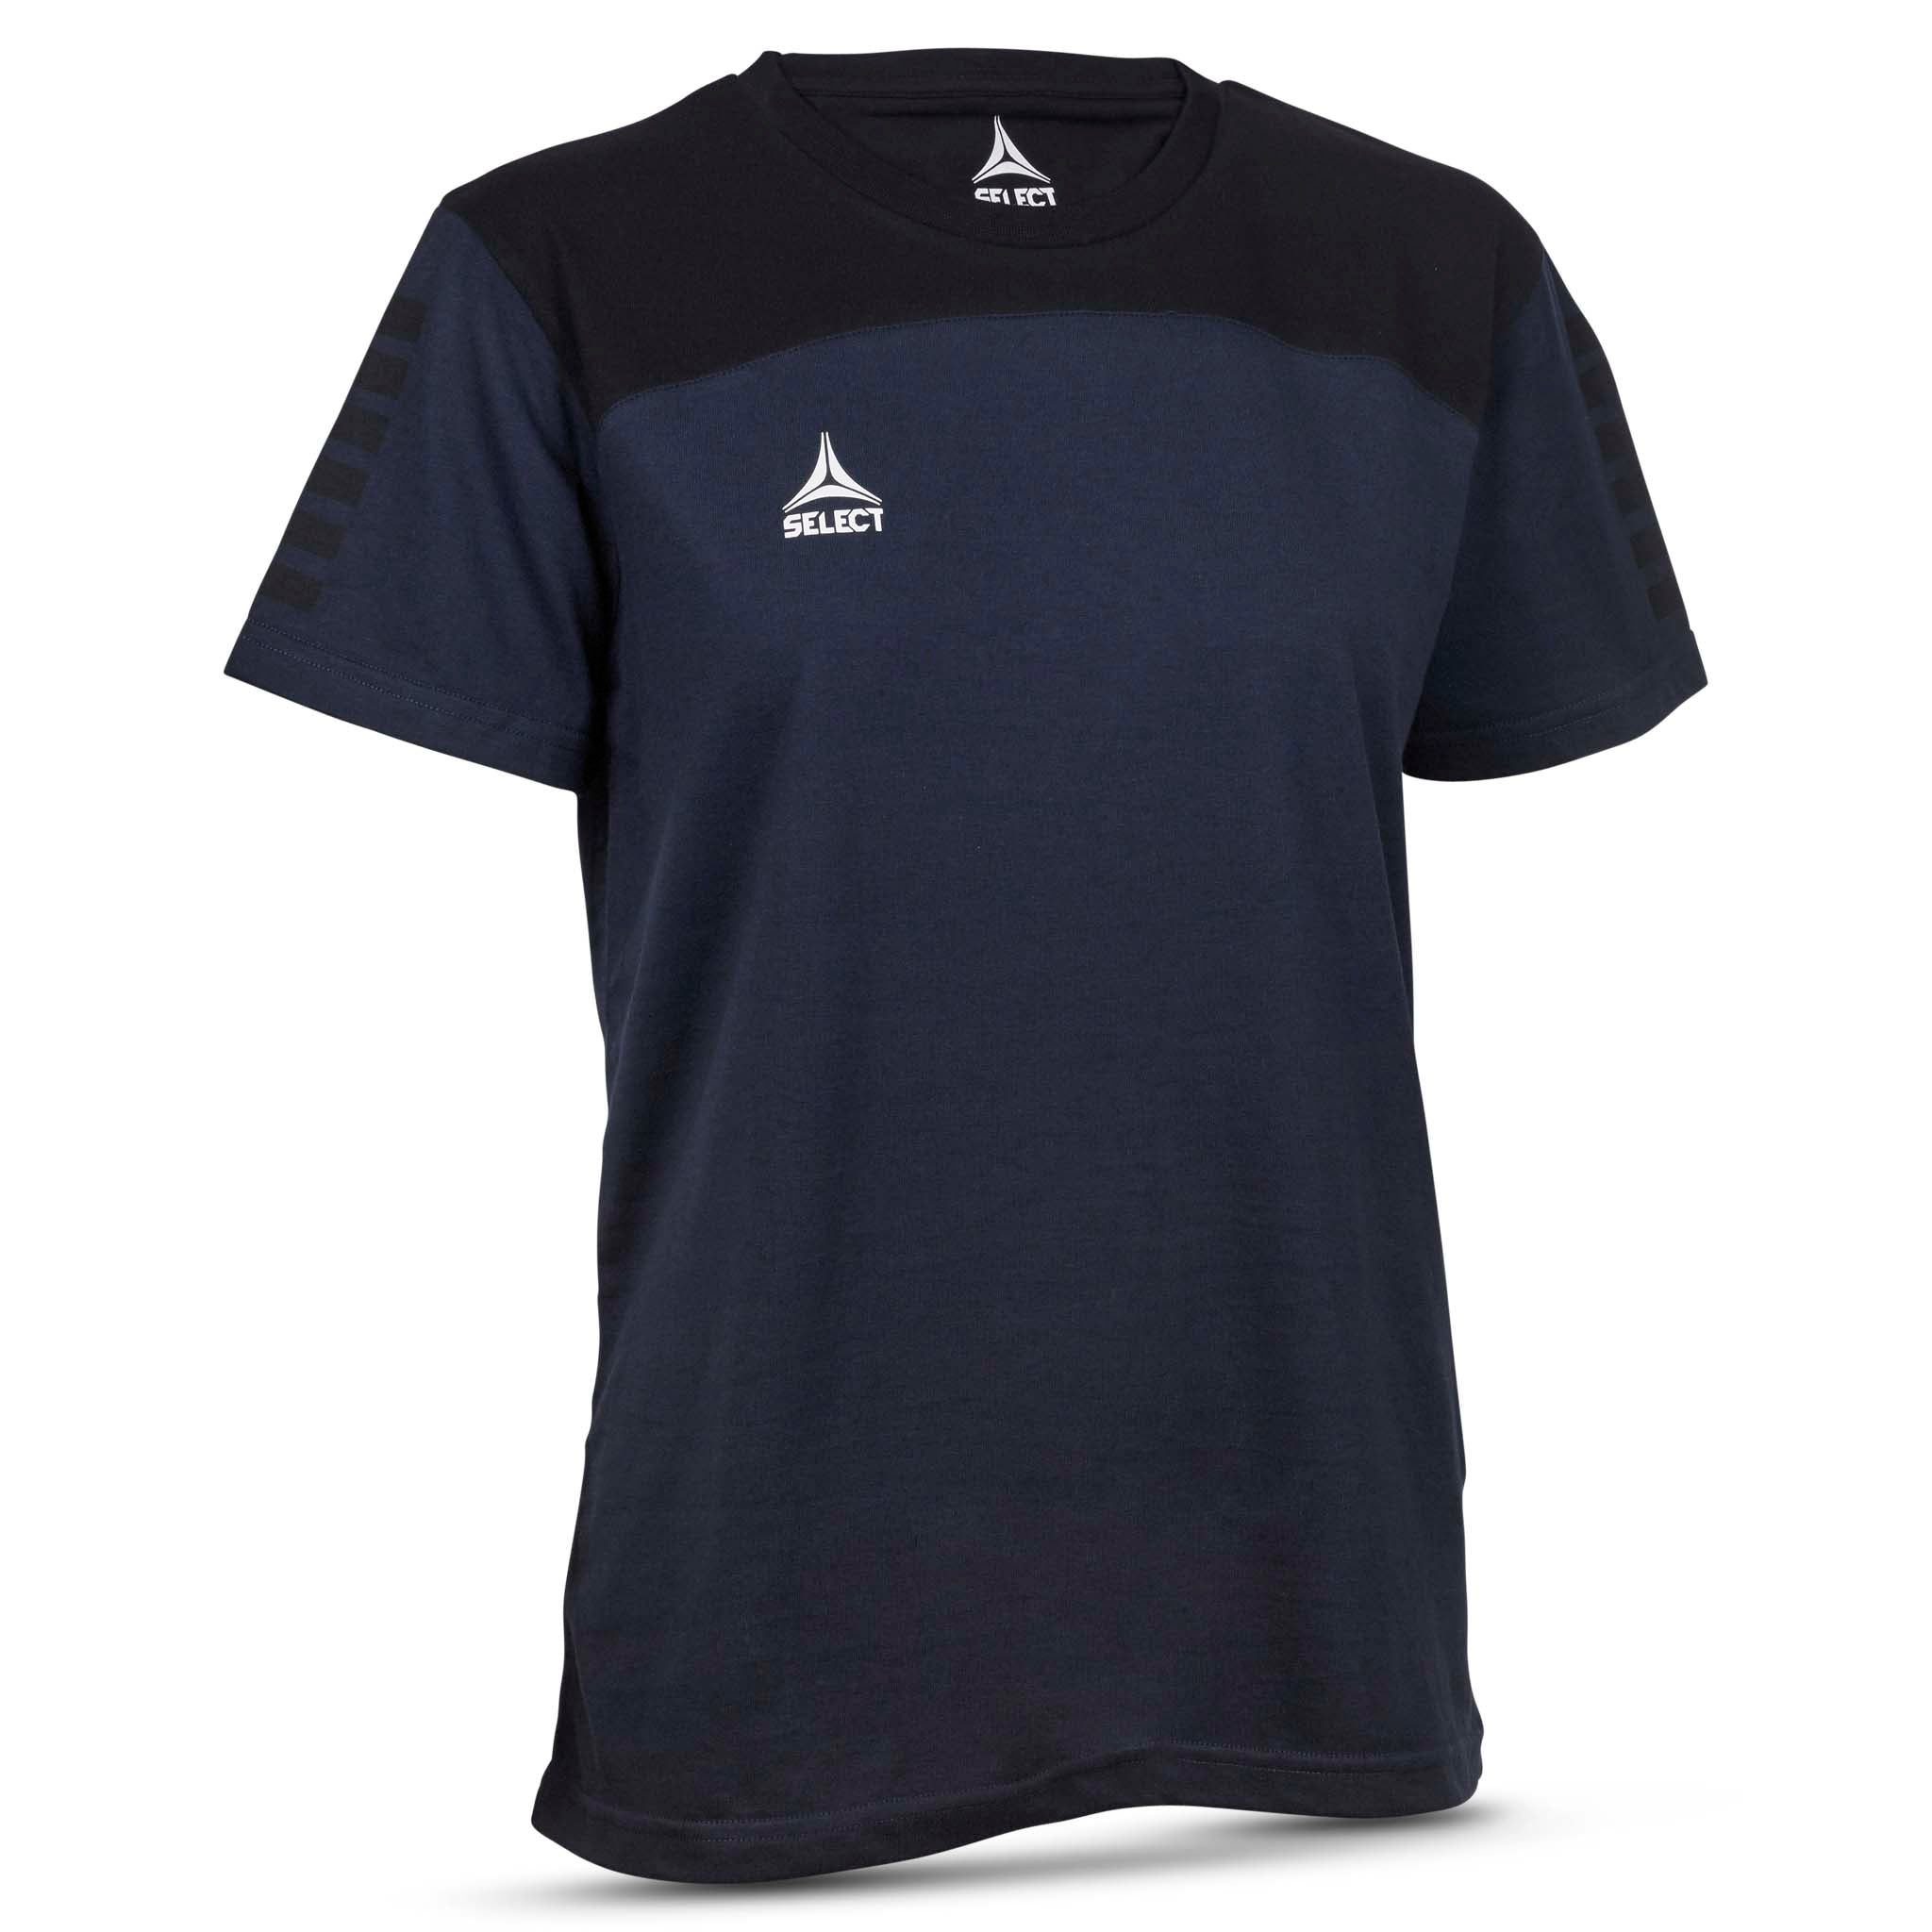 Oxford T-Shirt - Kvinder #farve_marine blå/sort